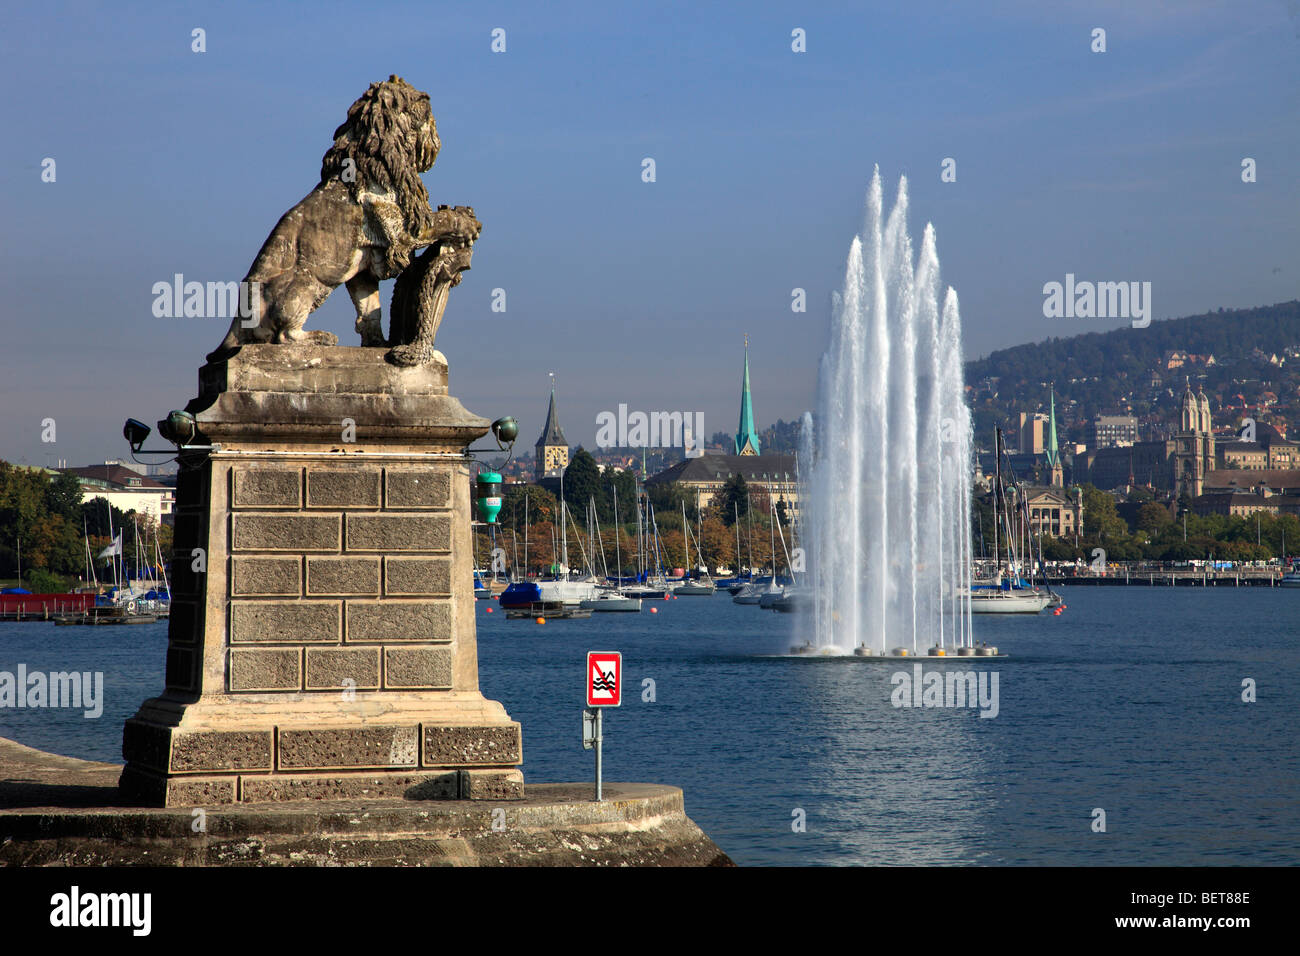 Suisse, Zurich, lac, fontaine, port, vue générale Banque D'Images